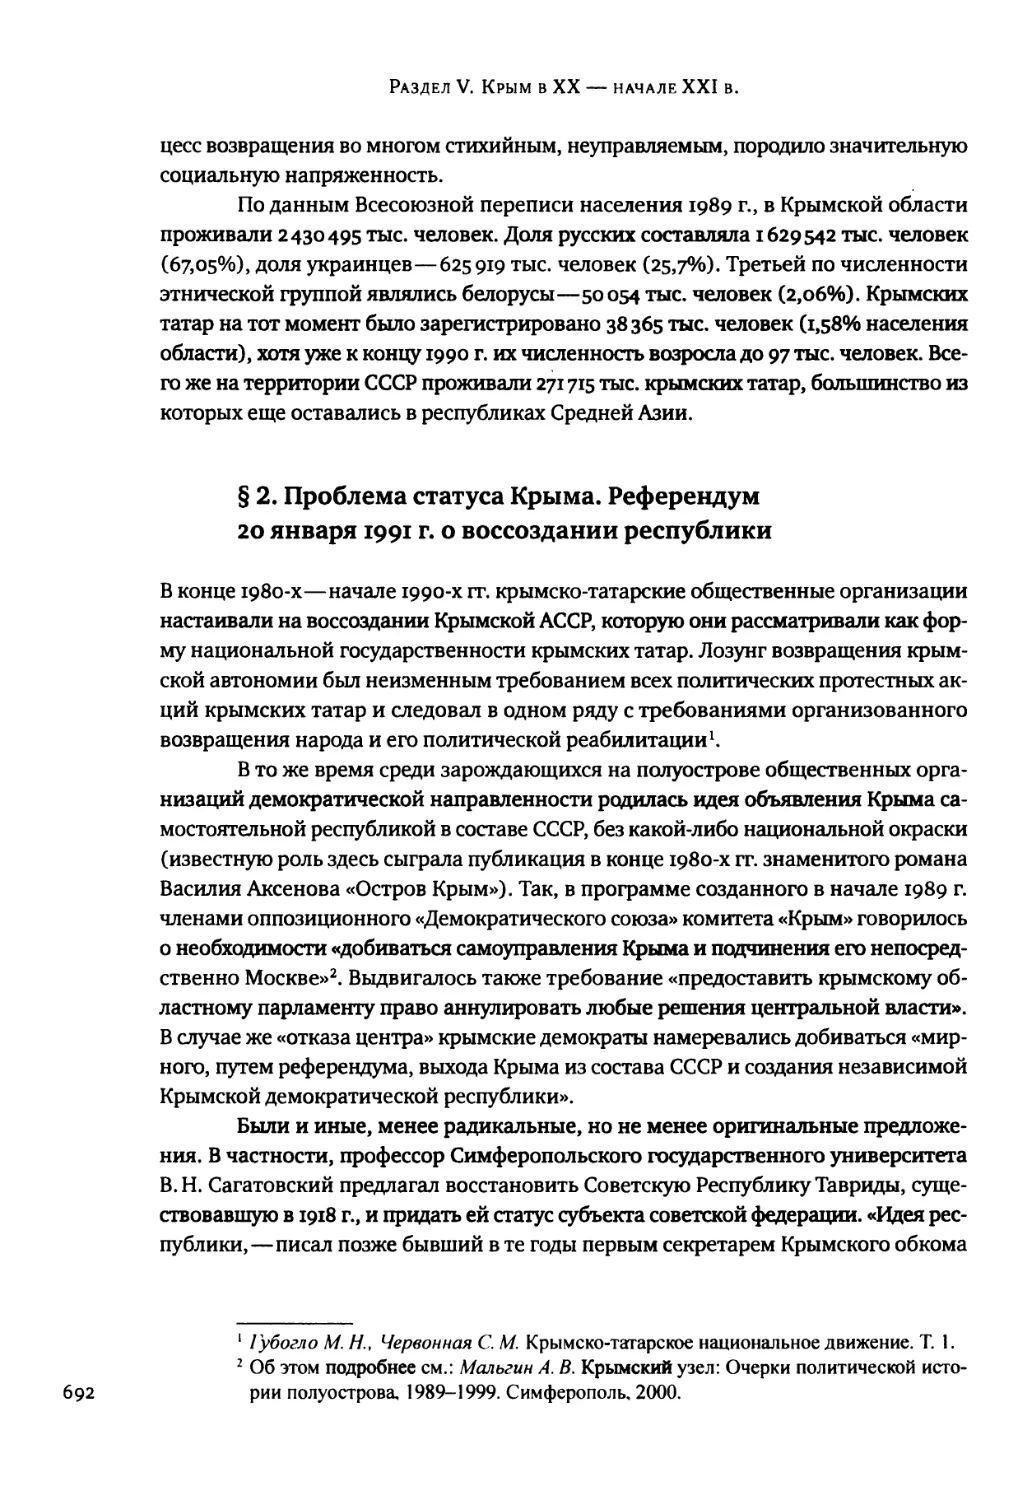 § 2. Проблема статуса Крыма. Референдум 20 января 1991 г. о воссоздании республики